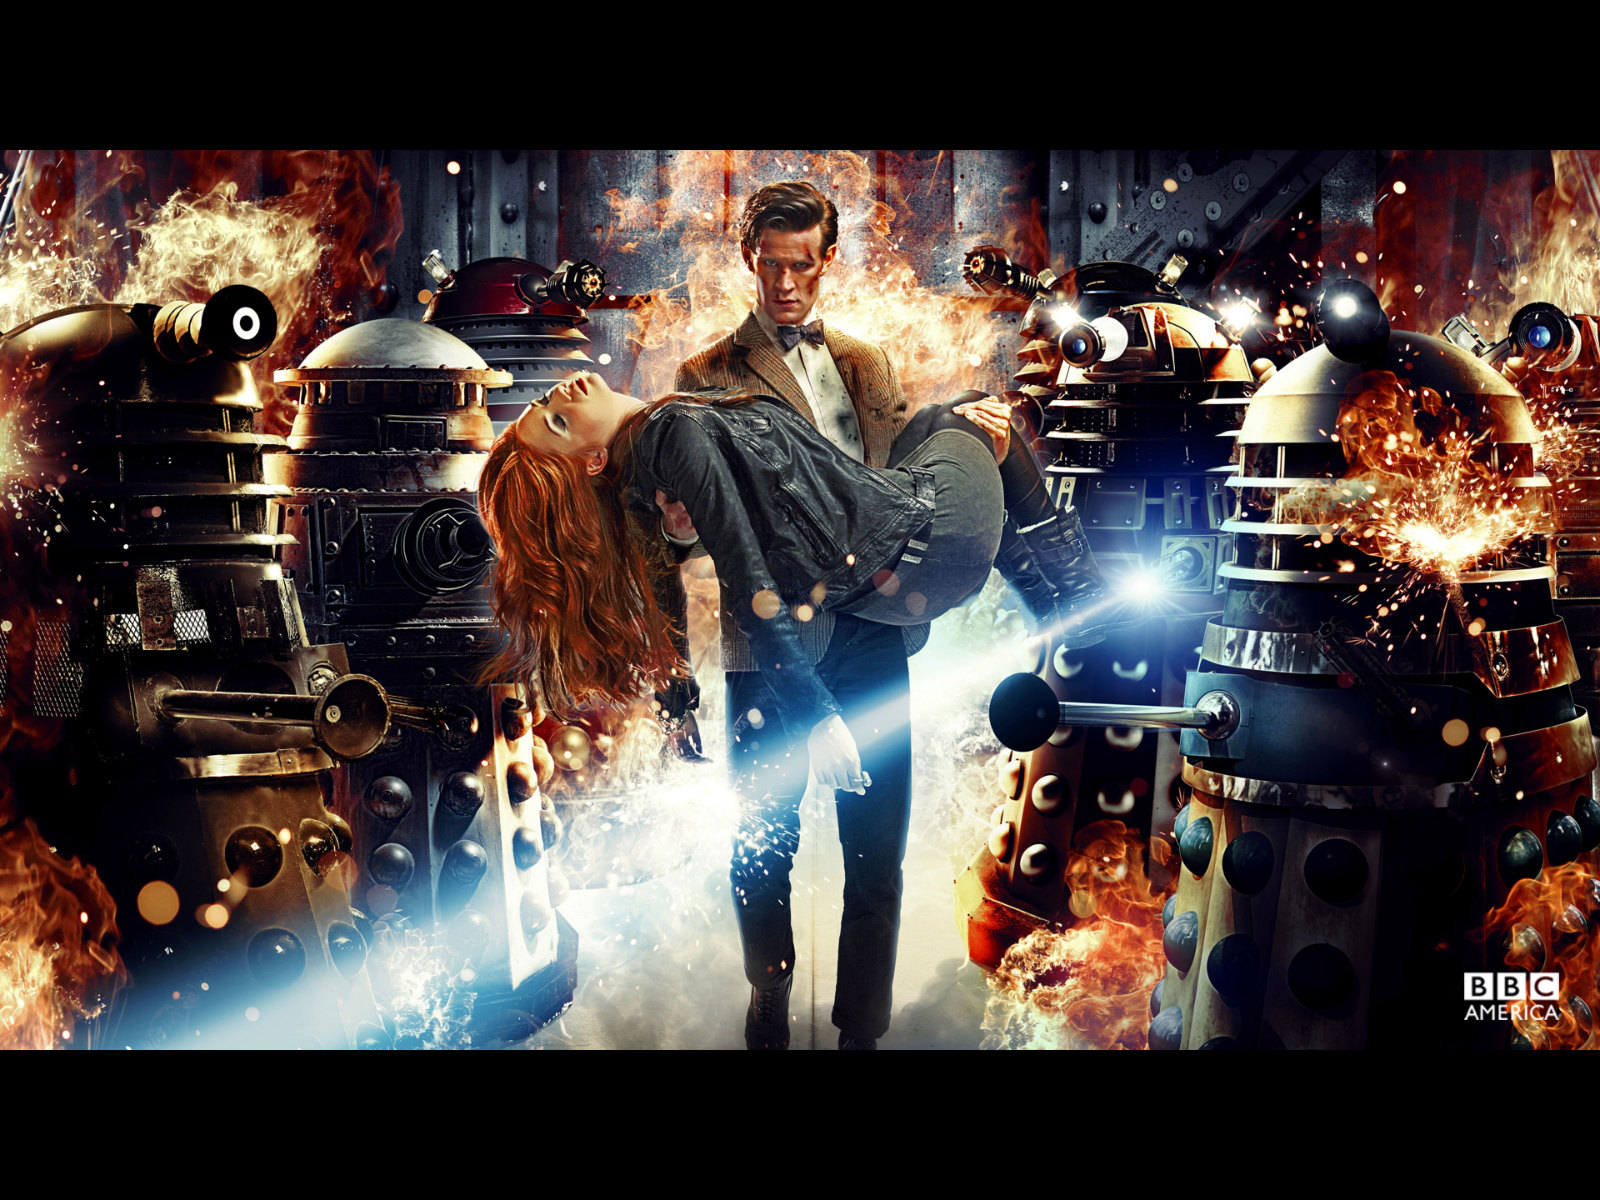 Doctor Who Wallpaper - #20038191 (1280x1024) | Desktop Download ...